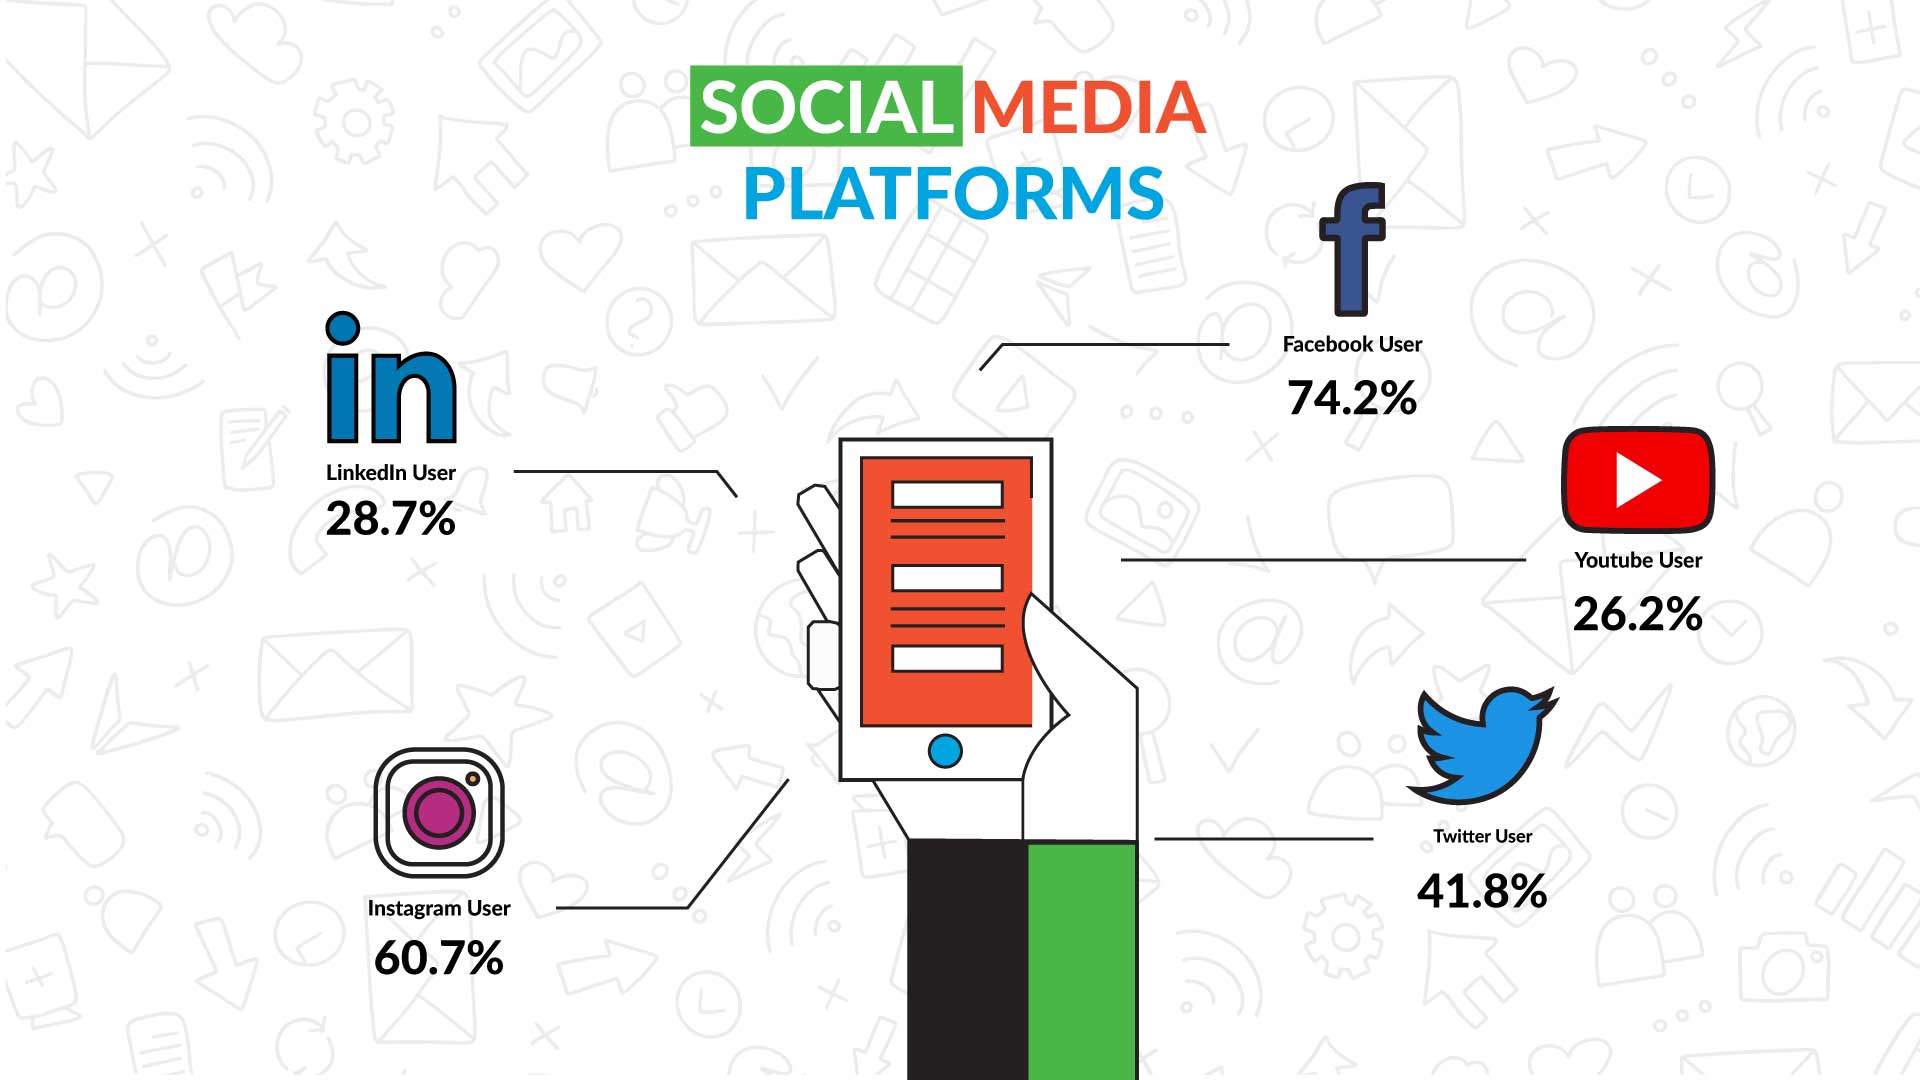 data of social media platform users